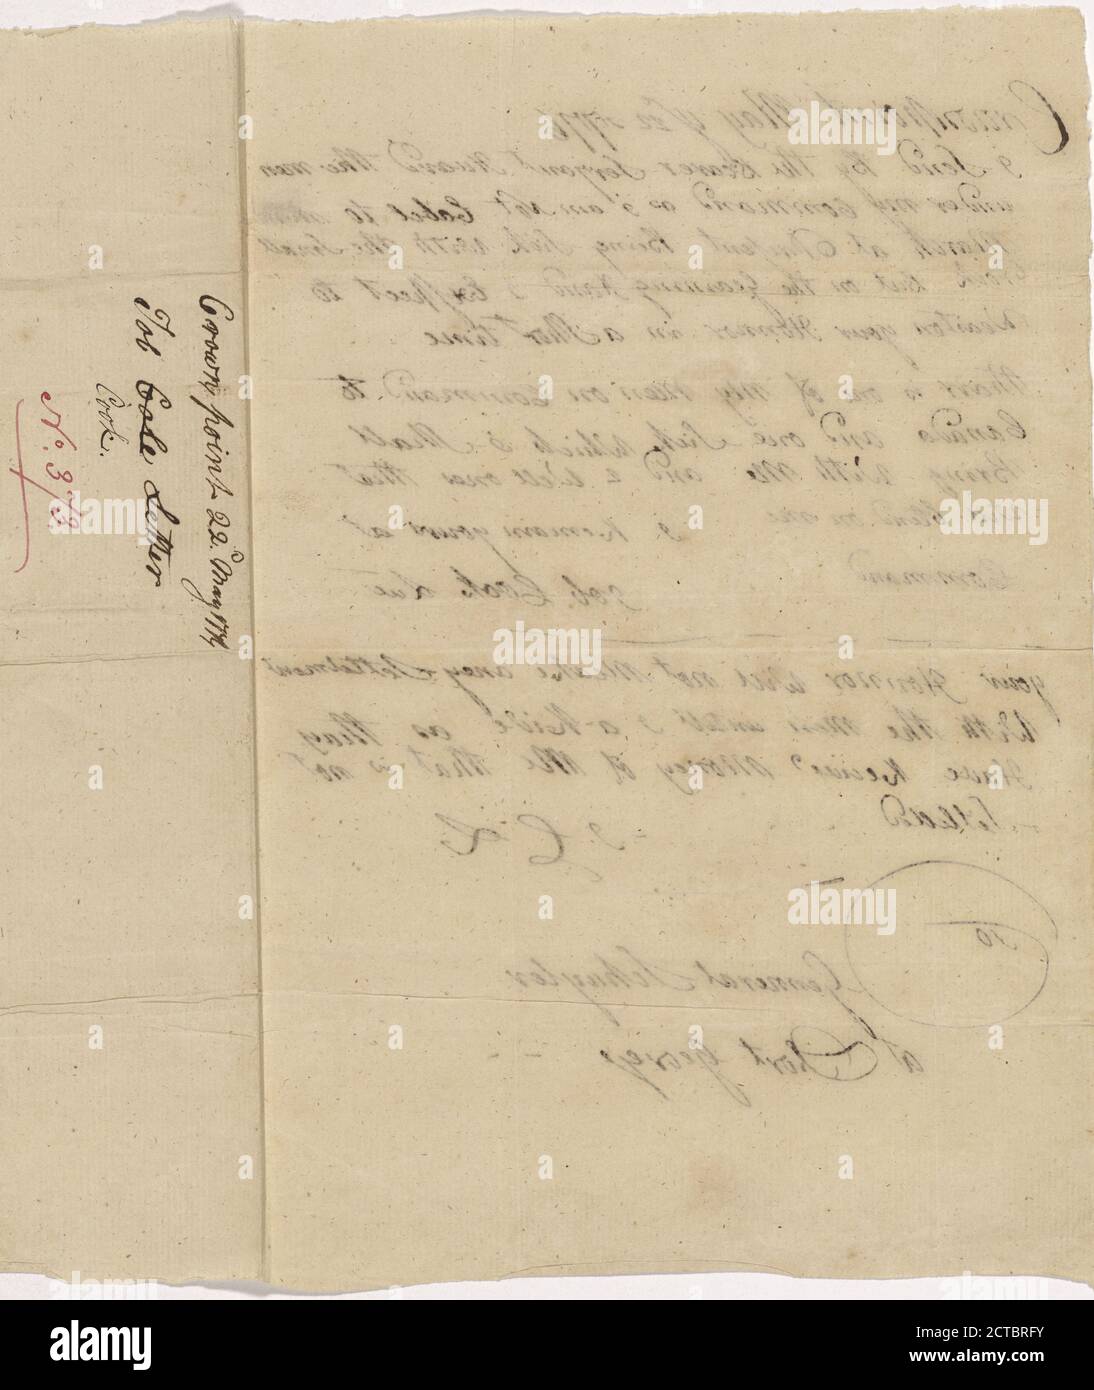 1776 May 22, text, Correspondence, 1776 Stock Photo